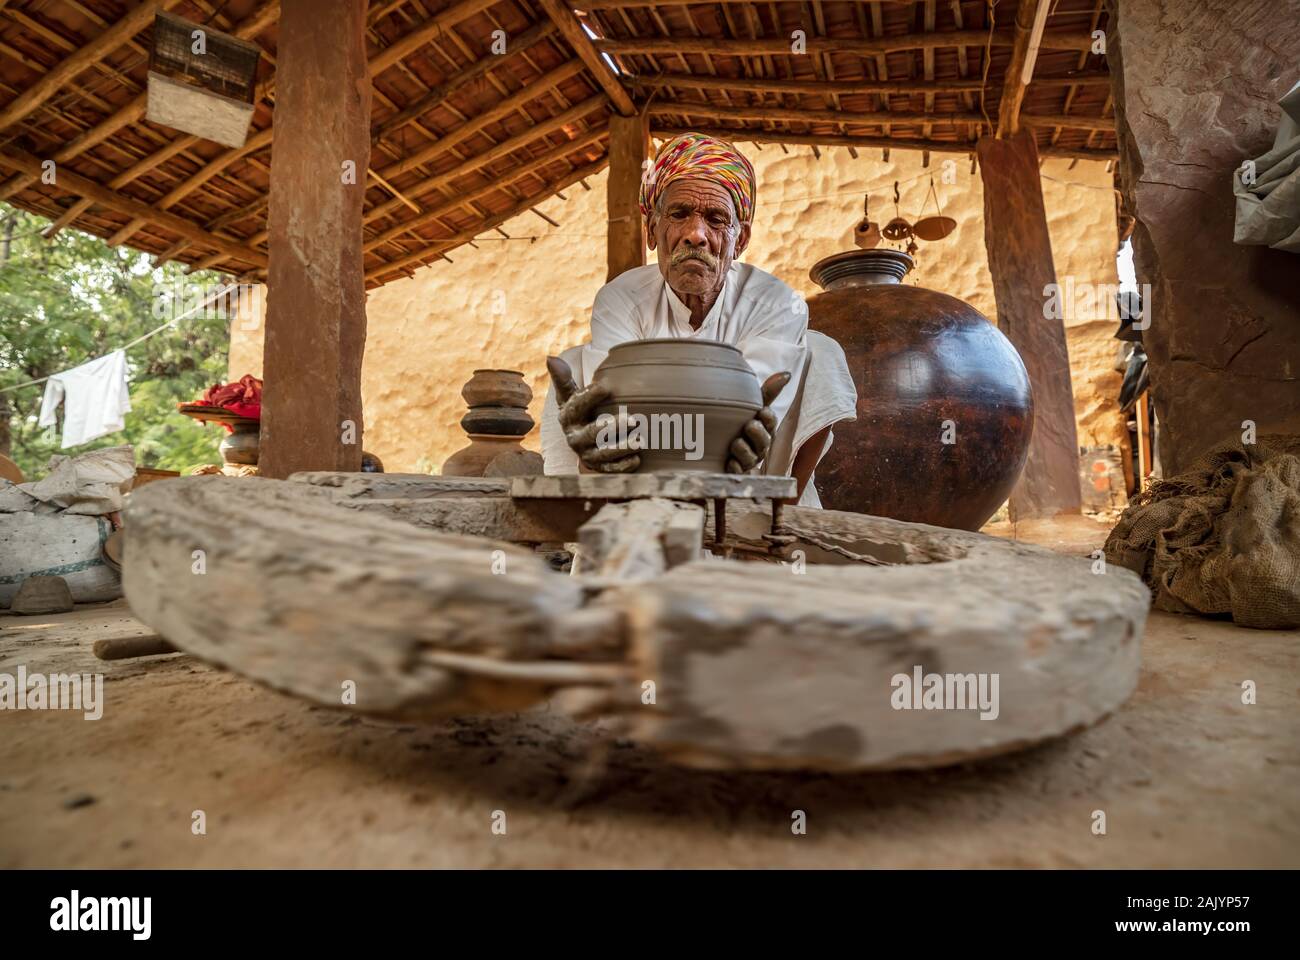 Potter am Arbeitsplatz macht Keramik Geschirr. Indien, Rajasthan. Stockfoto